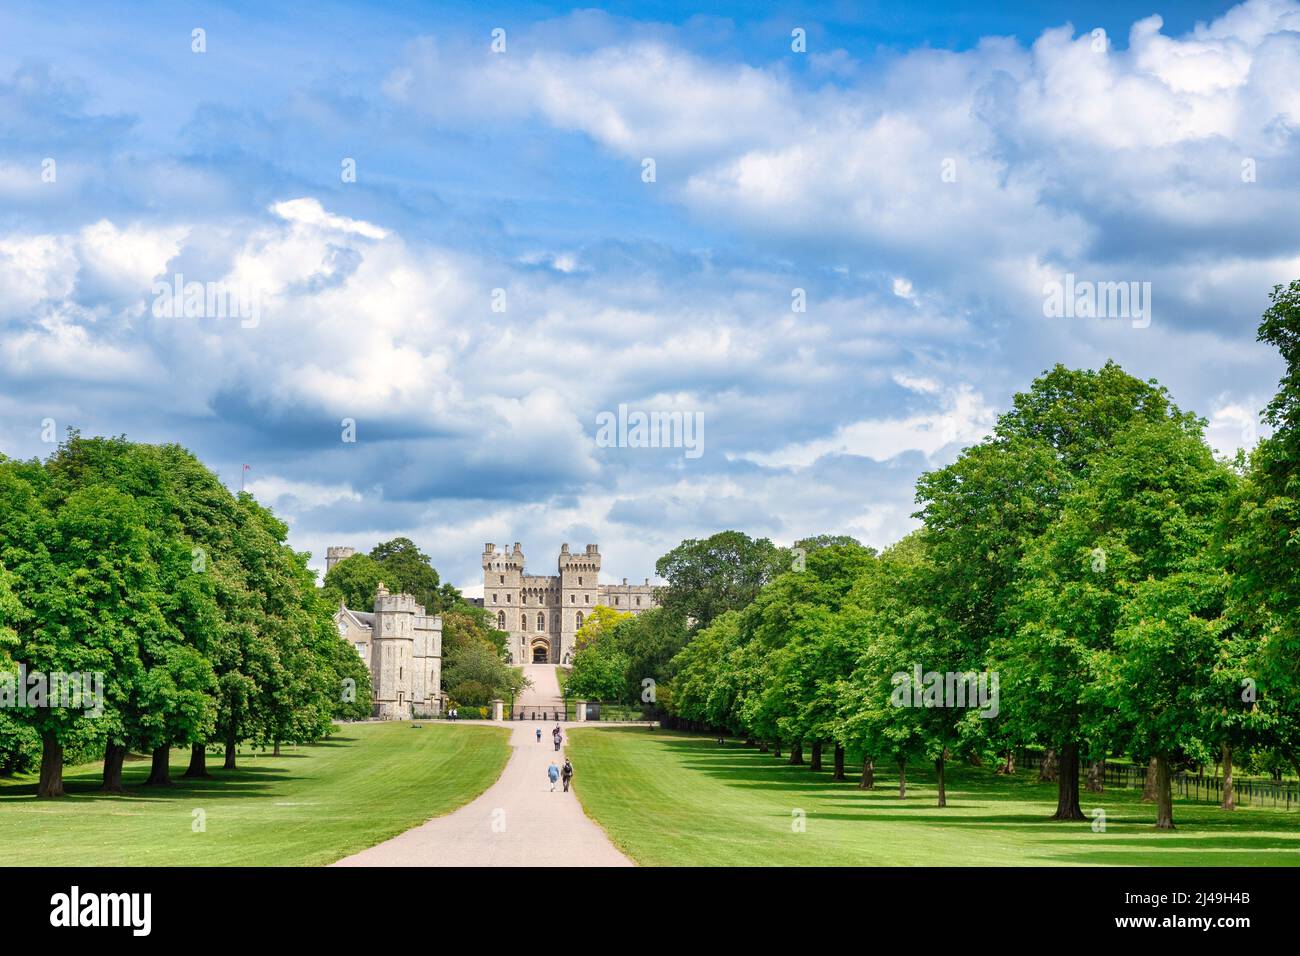 5 juin 2019: Windsor, Berkshire, Royaume-Uni - Château de Windsor, domicile du monarque britannique, et la longue promenade, avec son avenue d'arbres en pleine feuille, les gens wa Banque D'Images